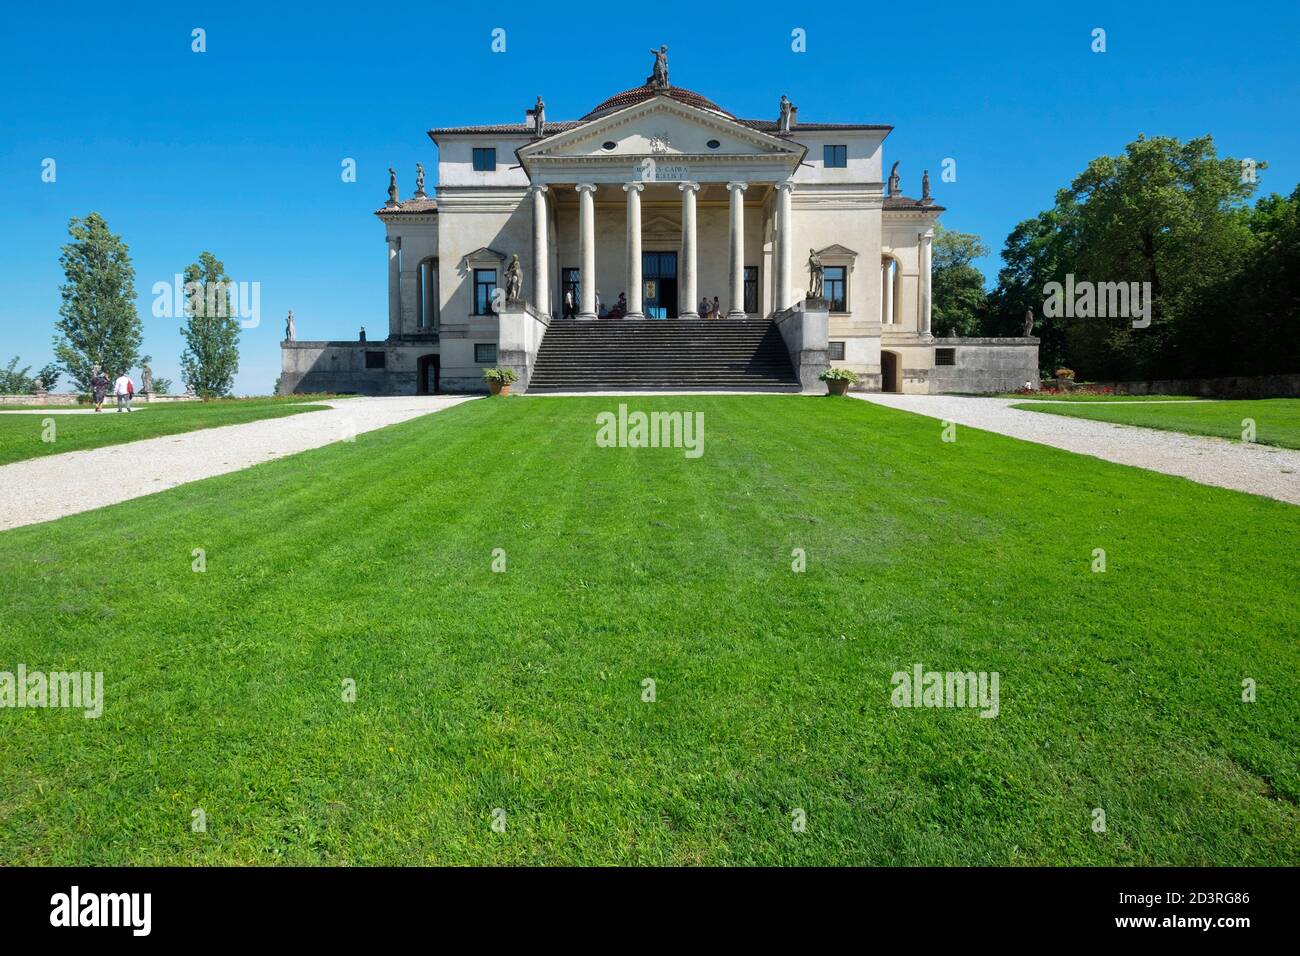 Villa la Rotonda par Andrea Palladio, Vicenza, Italie Banque D'Images